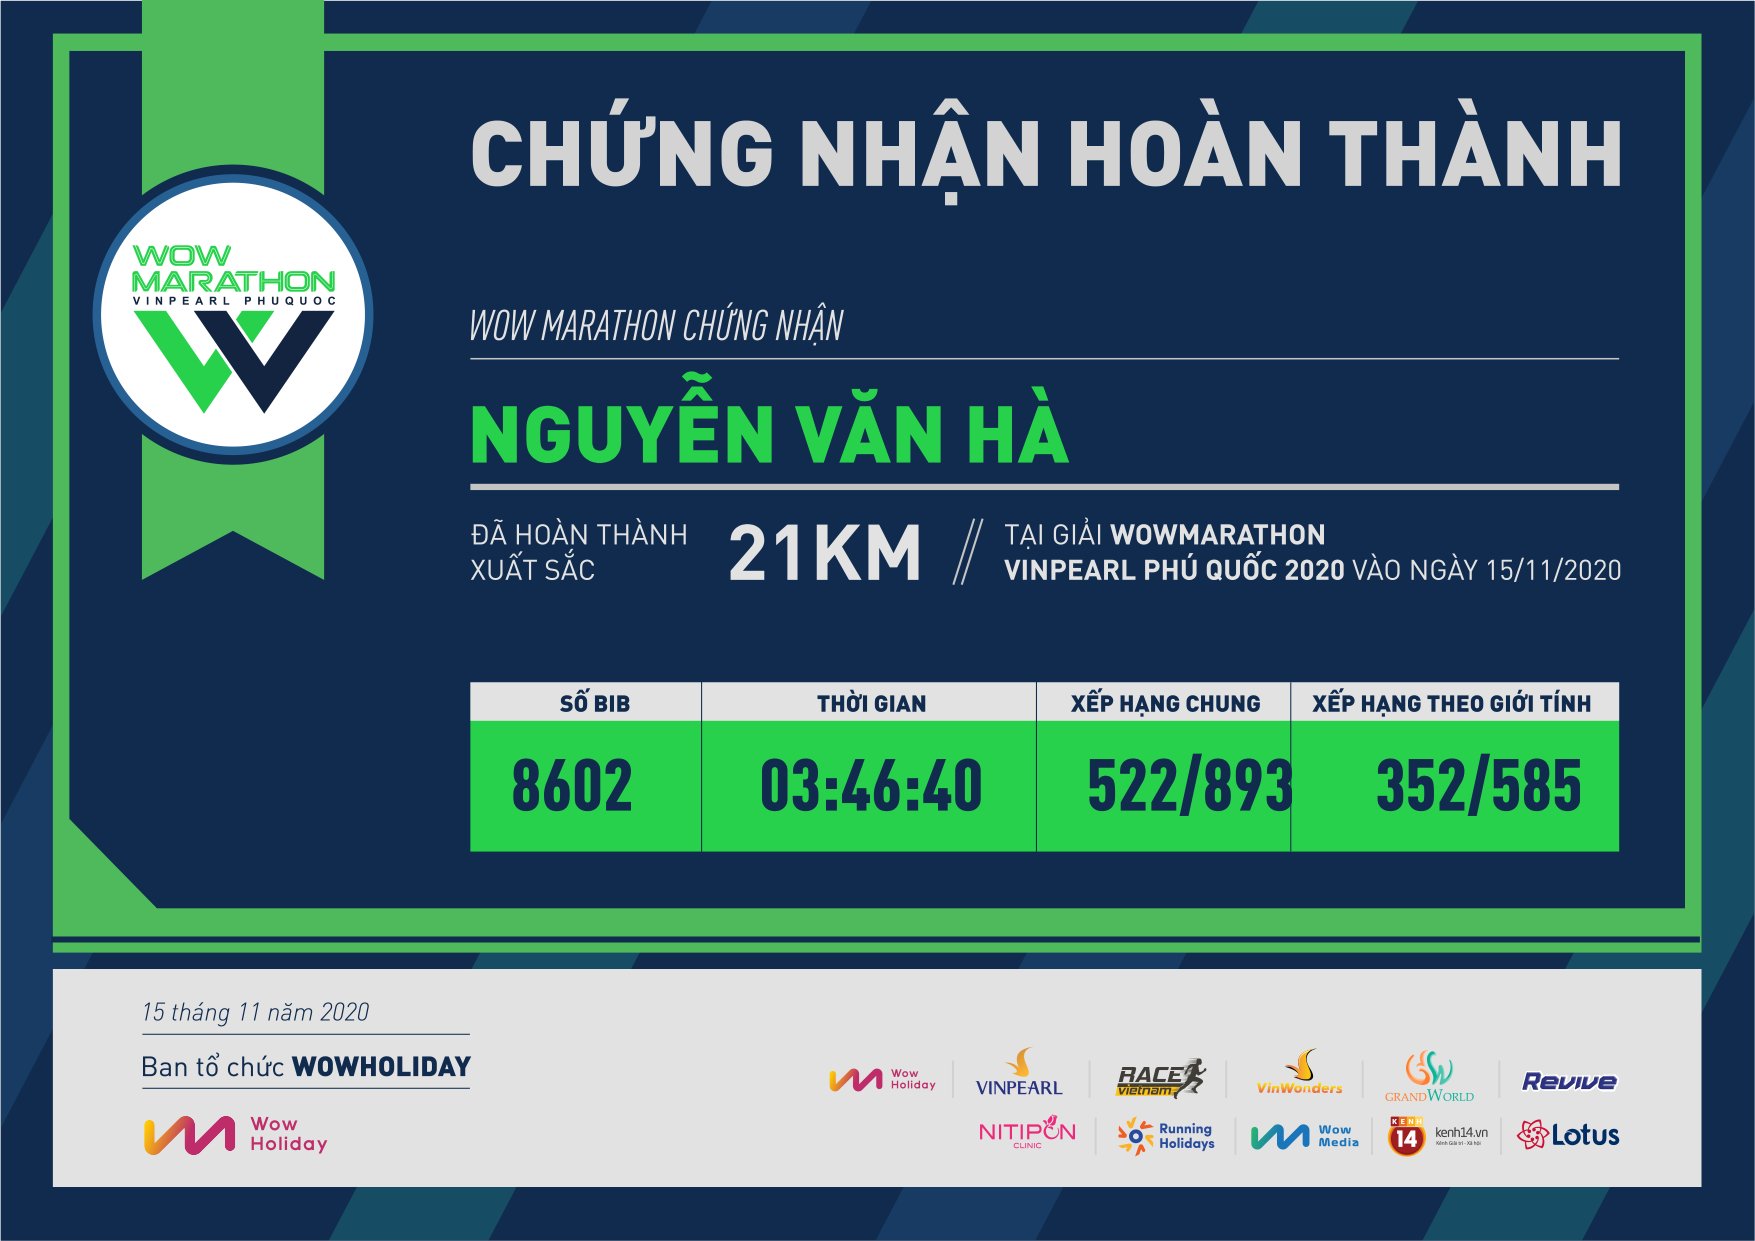 8602 - Nguyễn Văn Hà